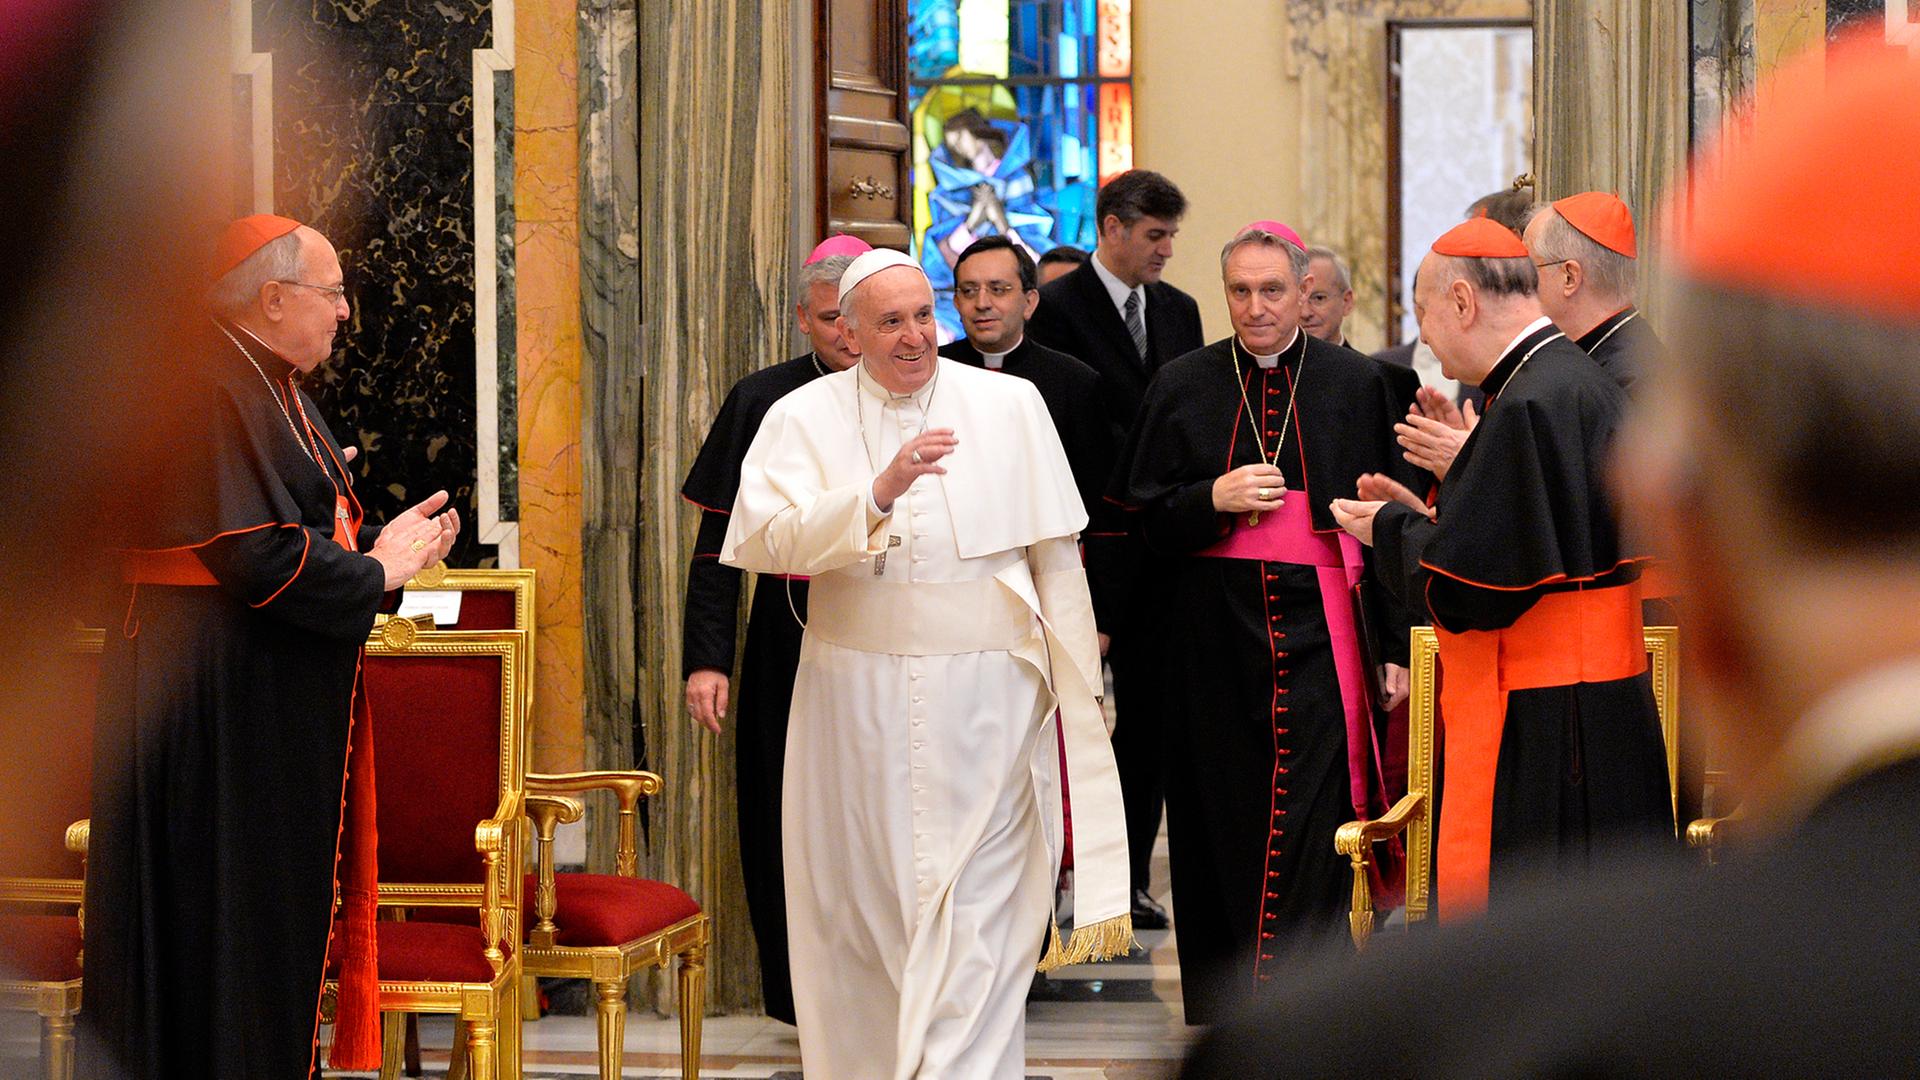 Papst Franziskus im Vatikan, wo er bei seiner jährlichen Weihnachtsbotschaft an Kardinäle, Bischöfe und Priester "15 Krankheiten" innerhalb der Kurie angeprangert.